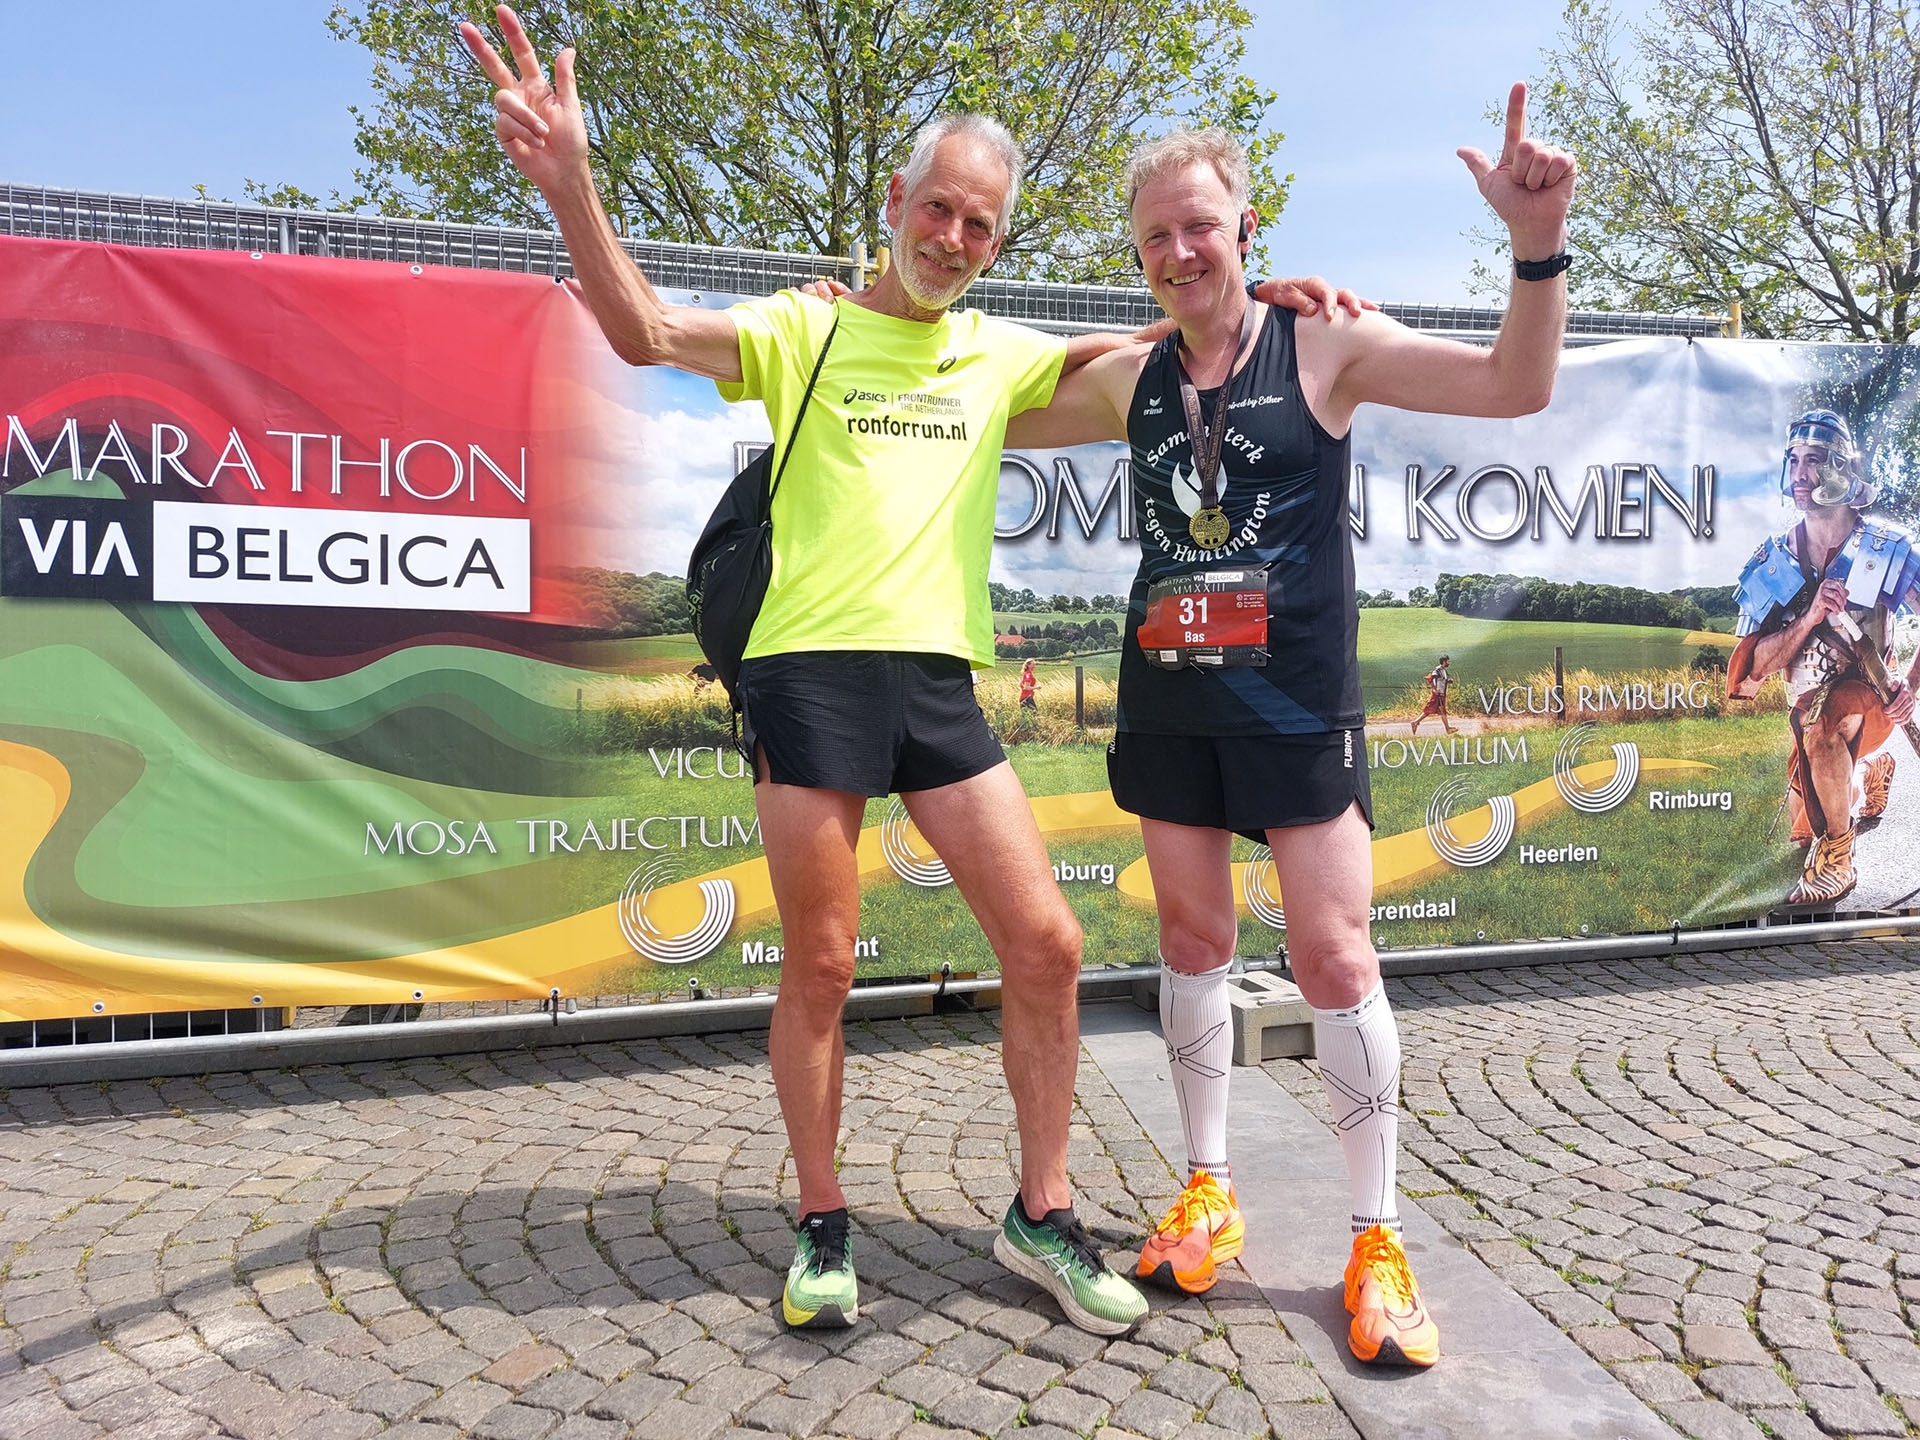 CTH op zijn Romeins in zware Marathon Via Belgica!